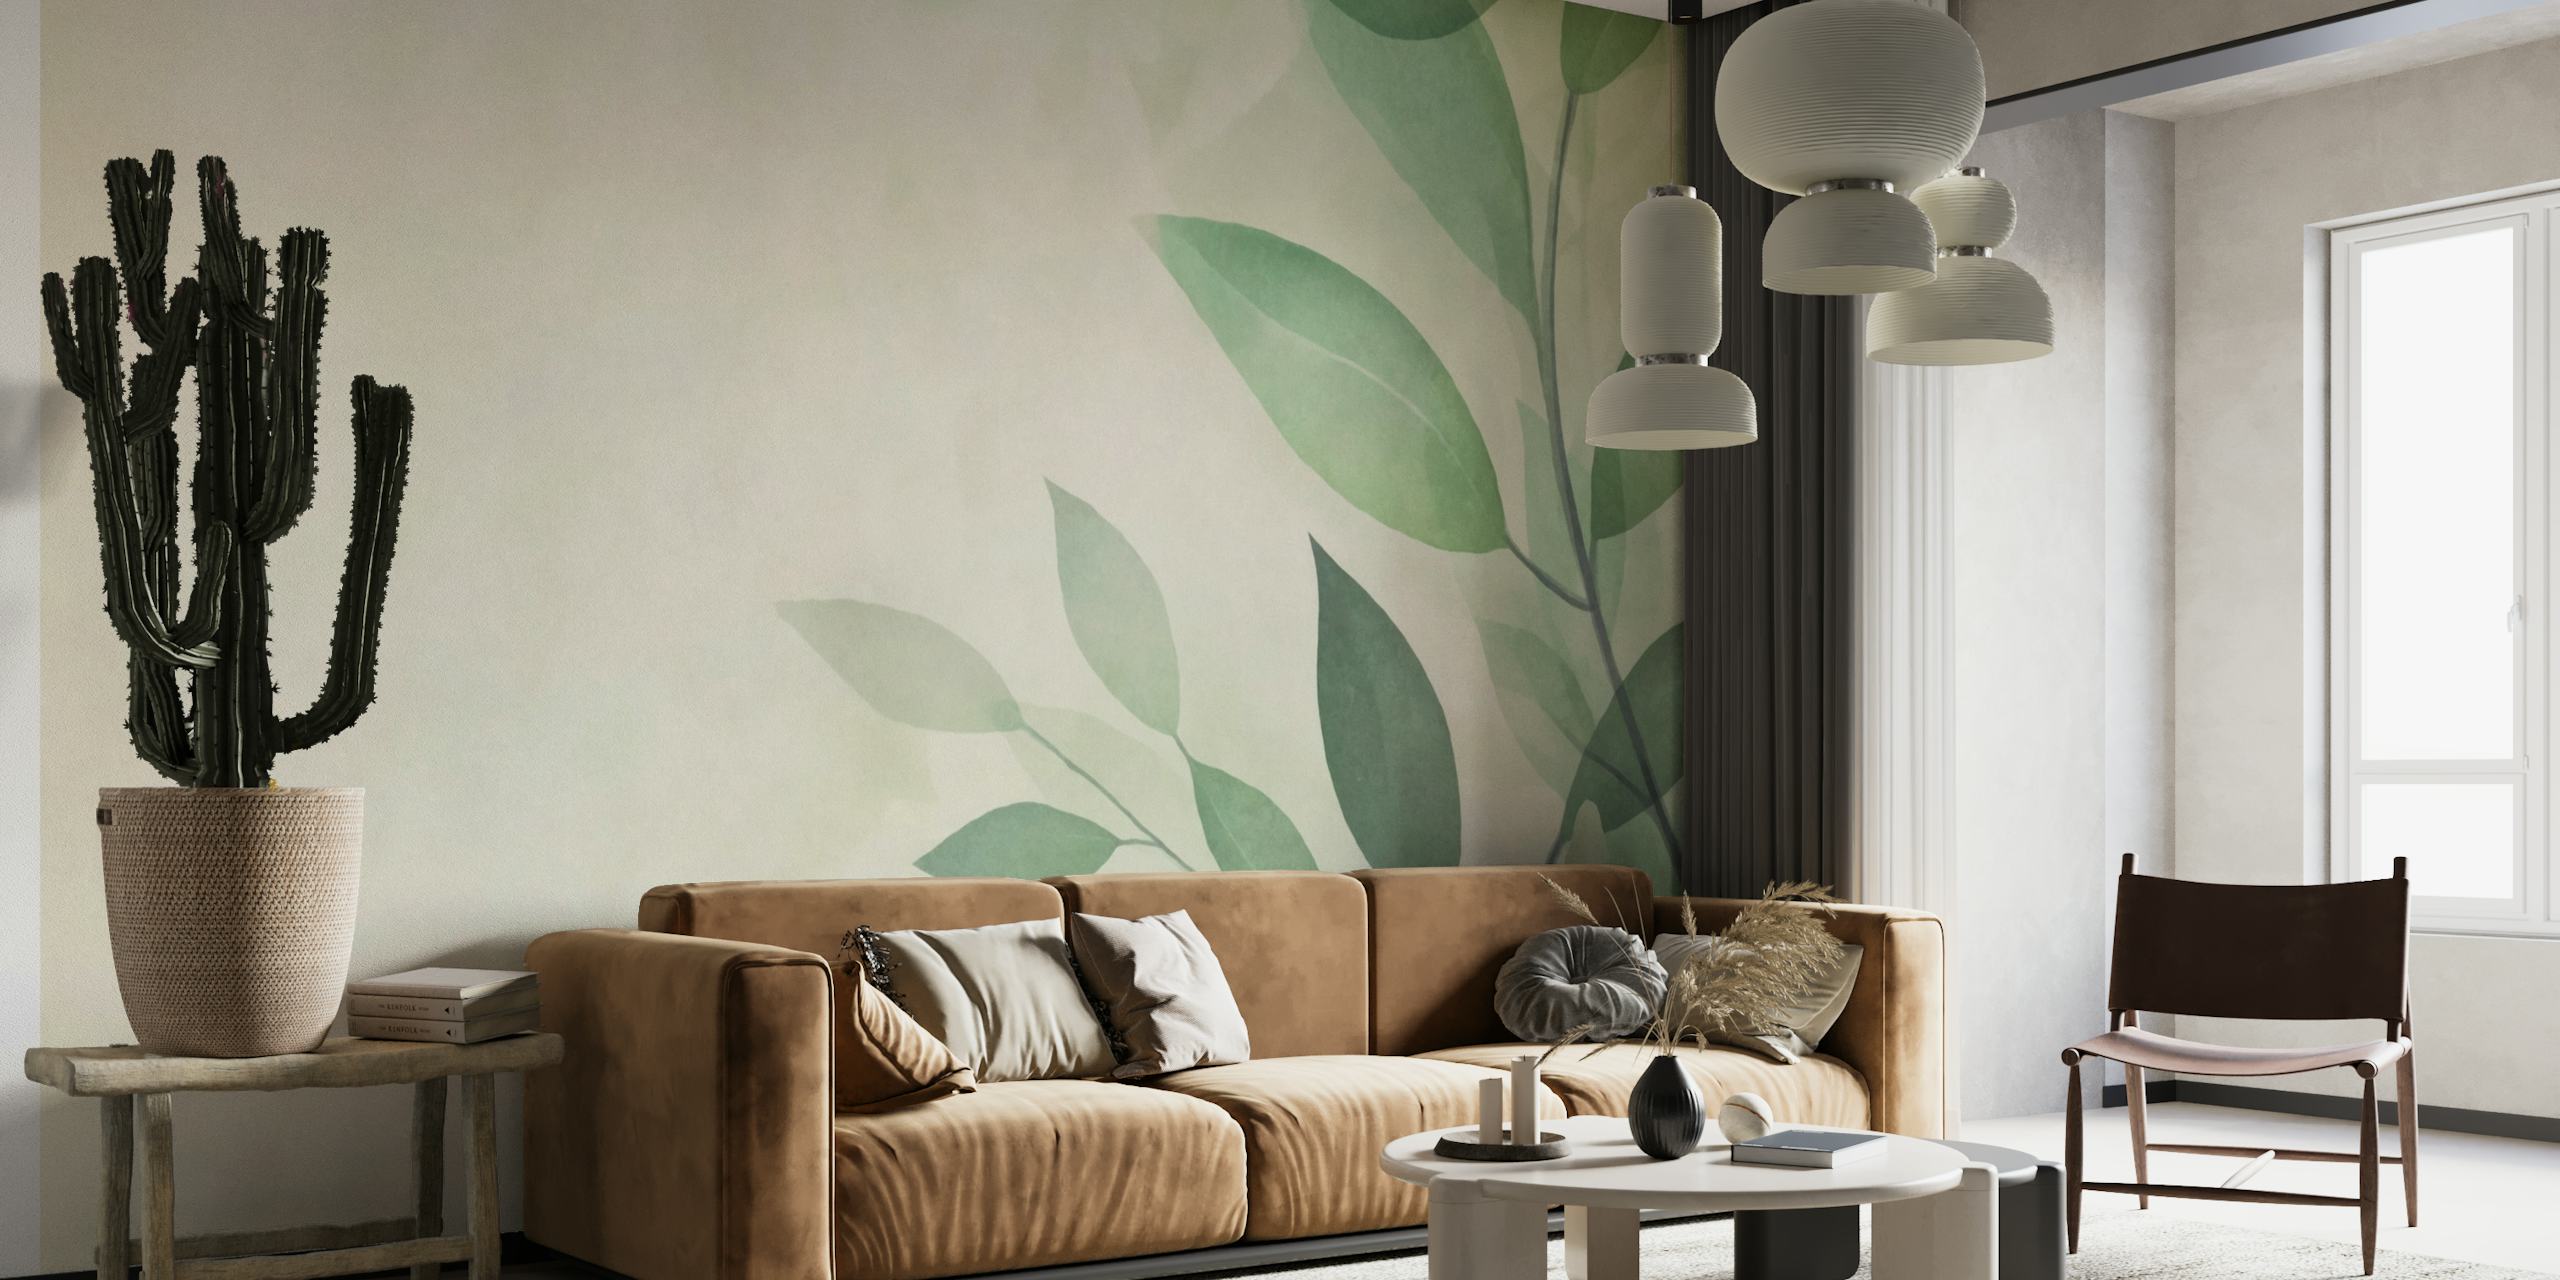 Zidna slika s mekim zelenim lišćem na neutralnoj pozadini za mirnu estetiku interijera